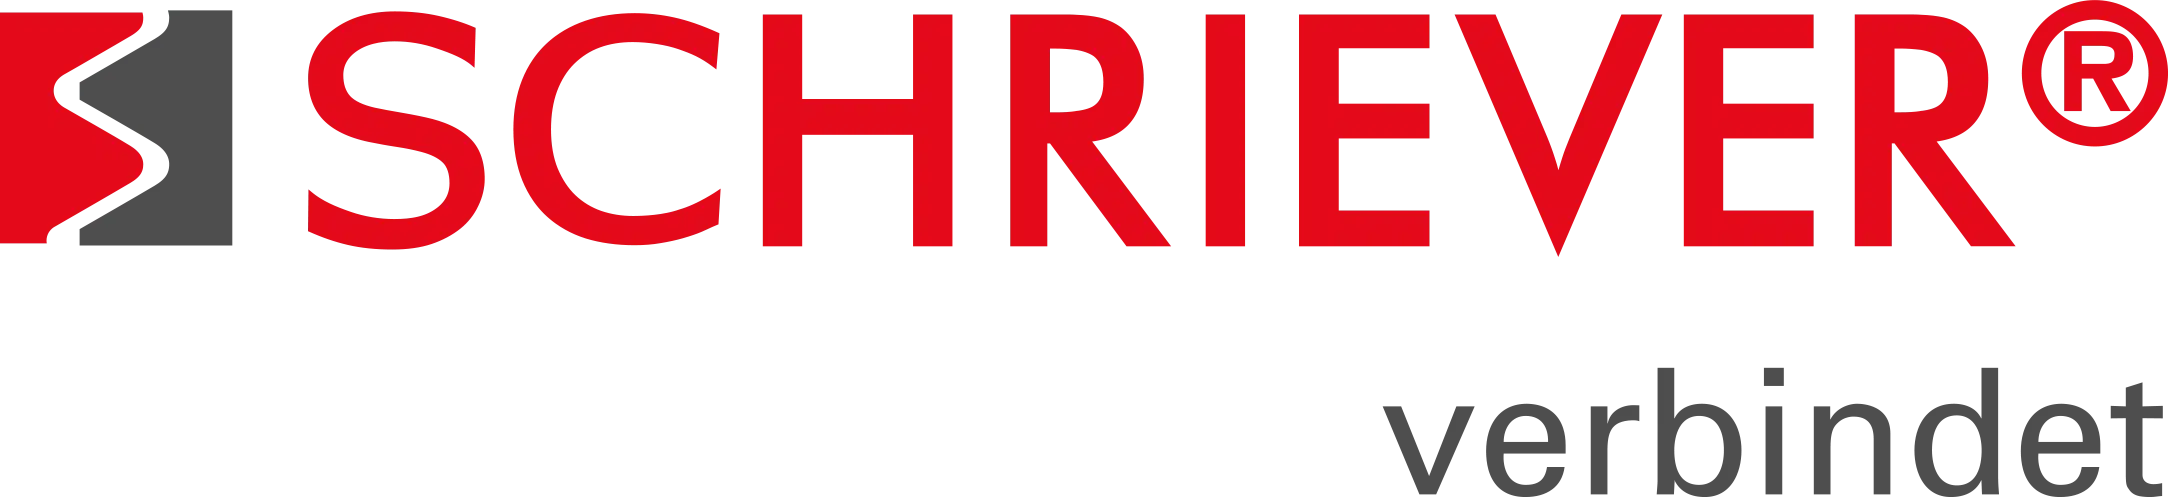 Schrauben-Schriever_Logo